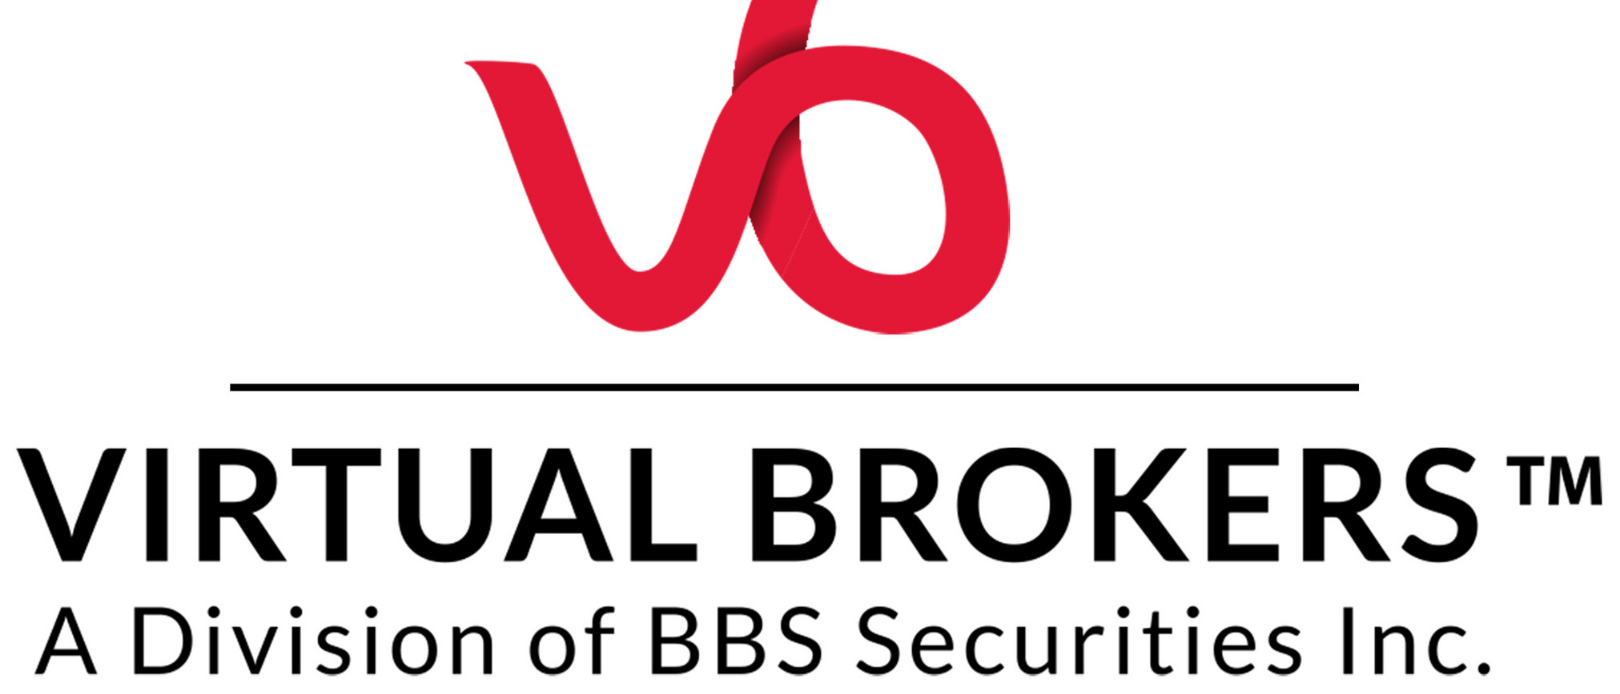 Virtual Brokers logo